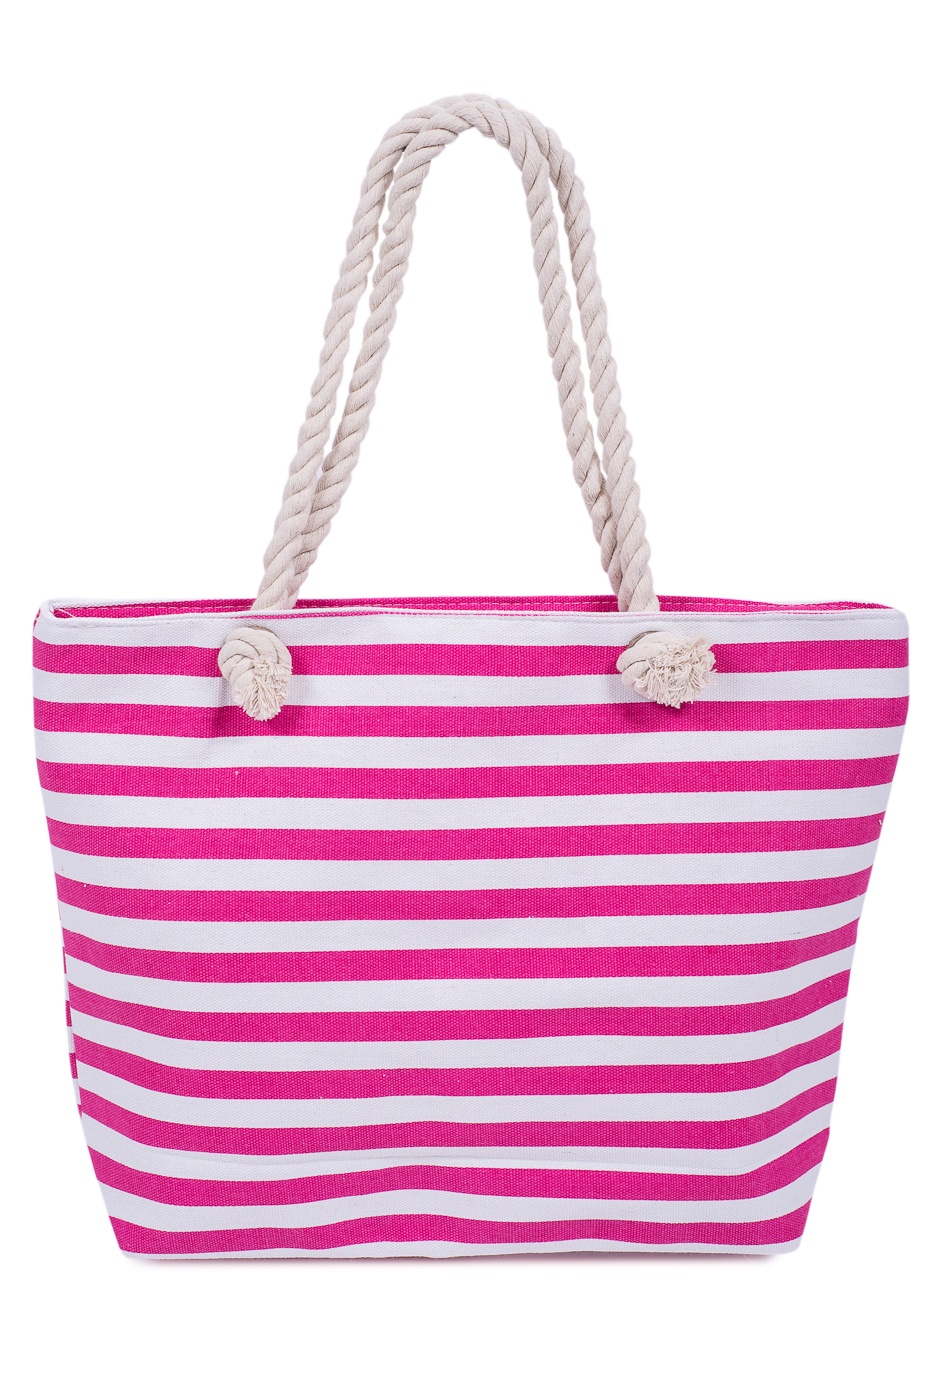 Пляжная сумка Nuages NS4240, розовый